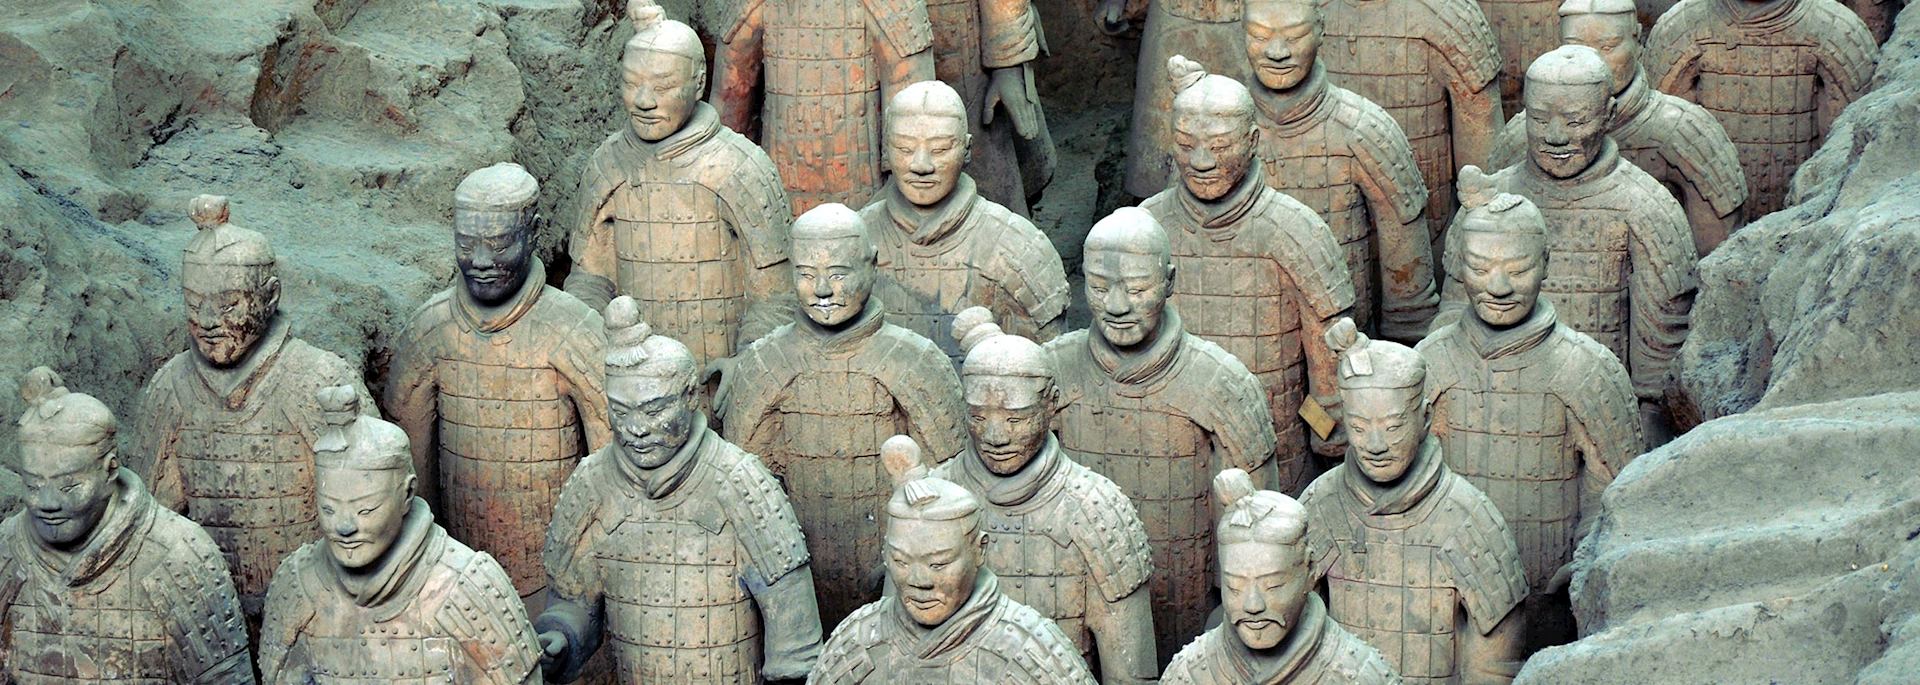 Xi'an's Terracotta Warriors